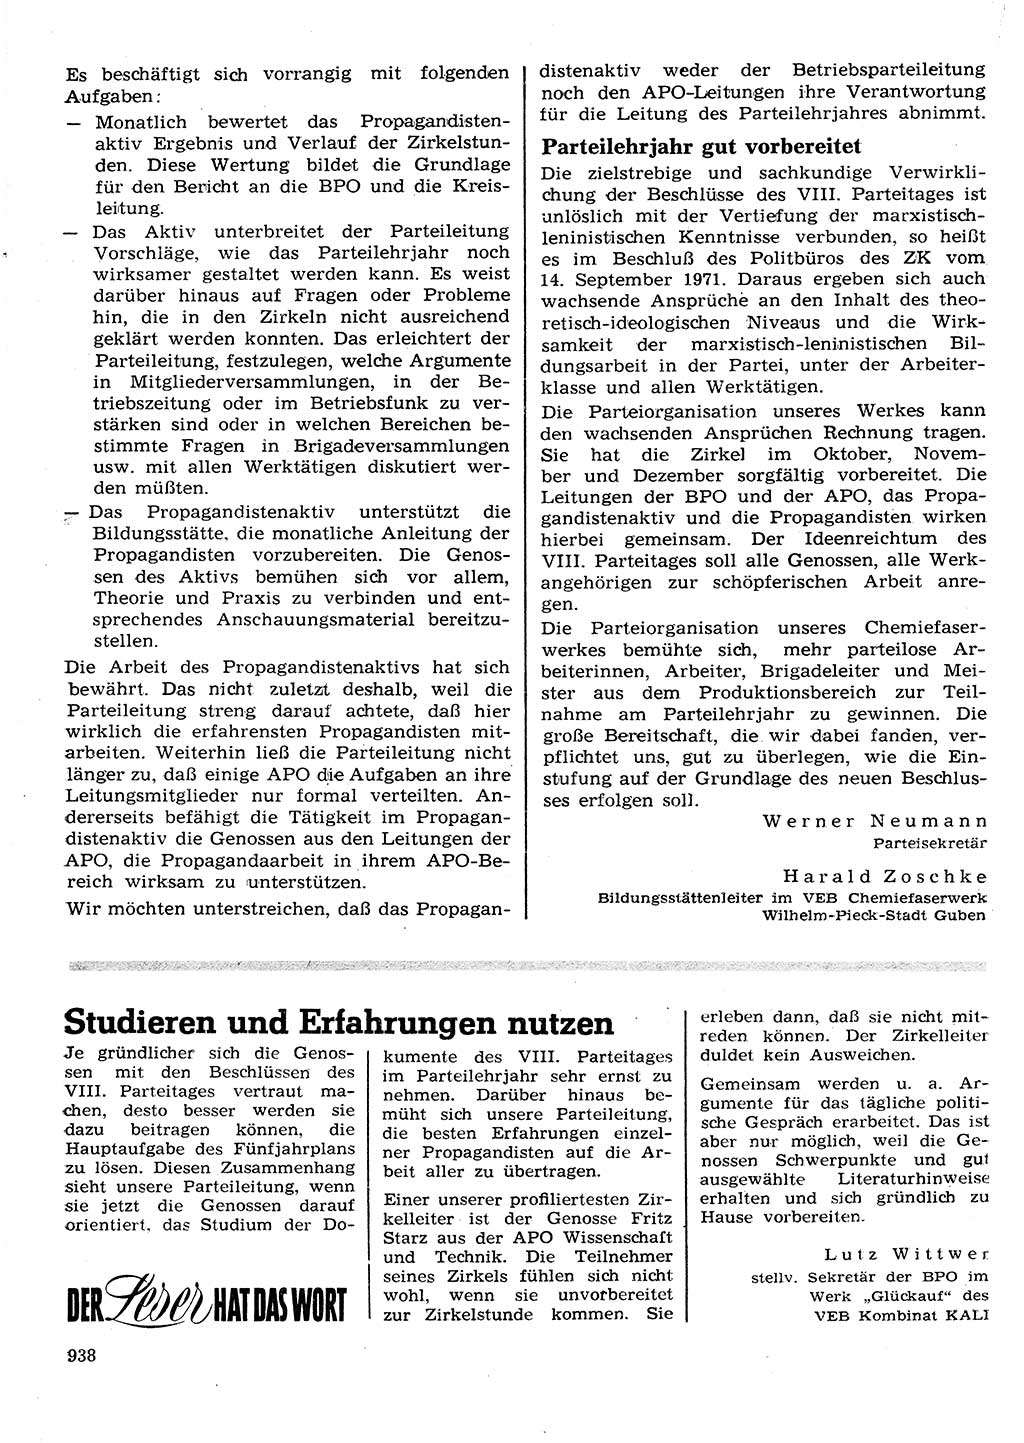 Neuer Weg (NW), Organ des Zentralkomitees (ZK) der SED (Sozialistische Einheitspartei Deutschlands) für Fragen des Parteilebens, 26. Jahrgang [Deutsche Demokratische Republik (DDR)] 1971, Seite 938 (NW ZK SED DDR 1971, S. 938)